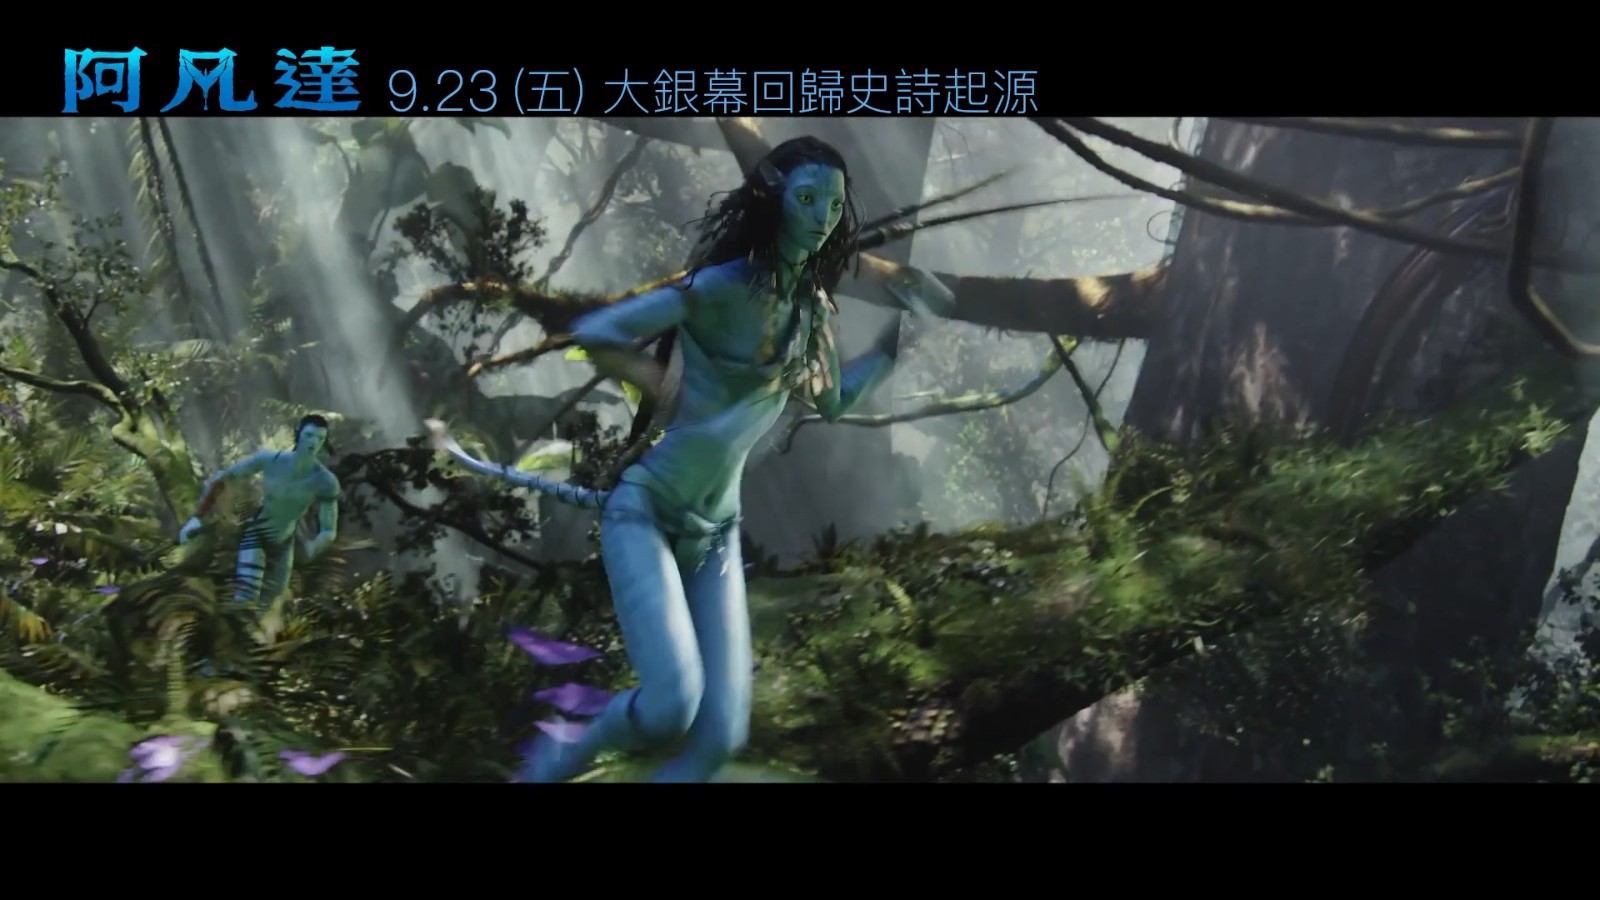 《阿凡达》沉映版官方中字预告 9月23日上映